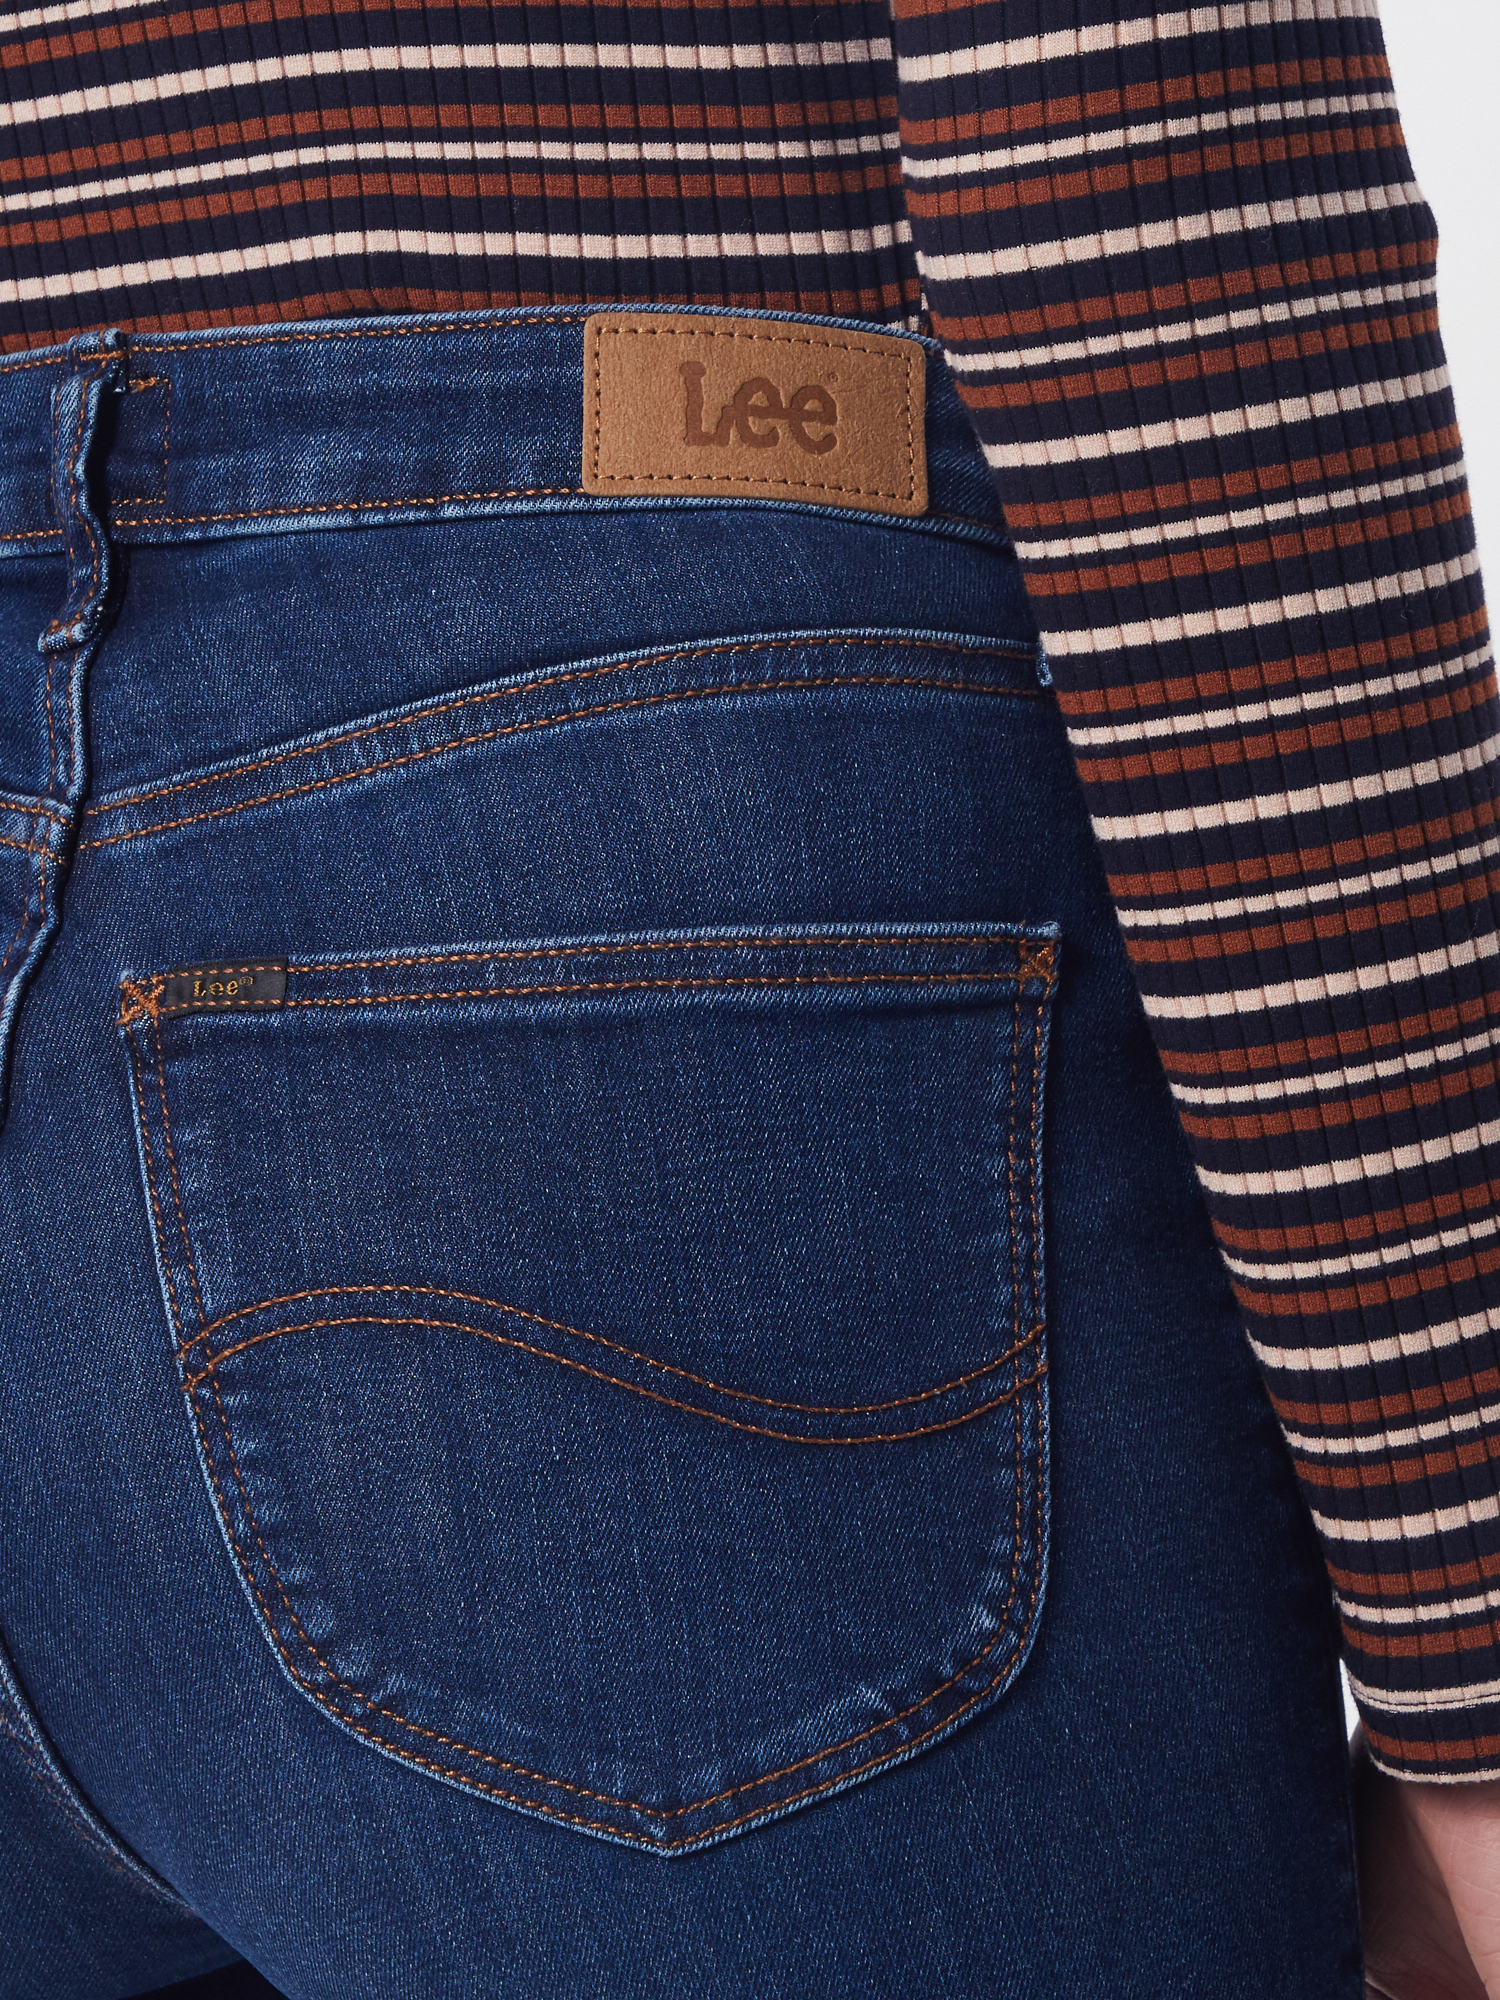 Lee Jeans IVY in Blau 